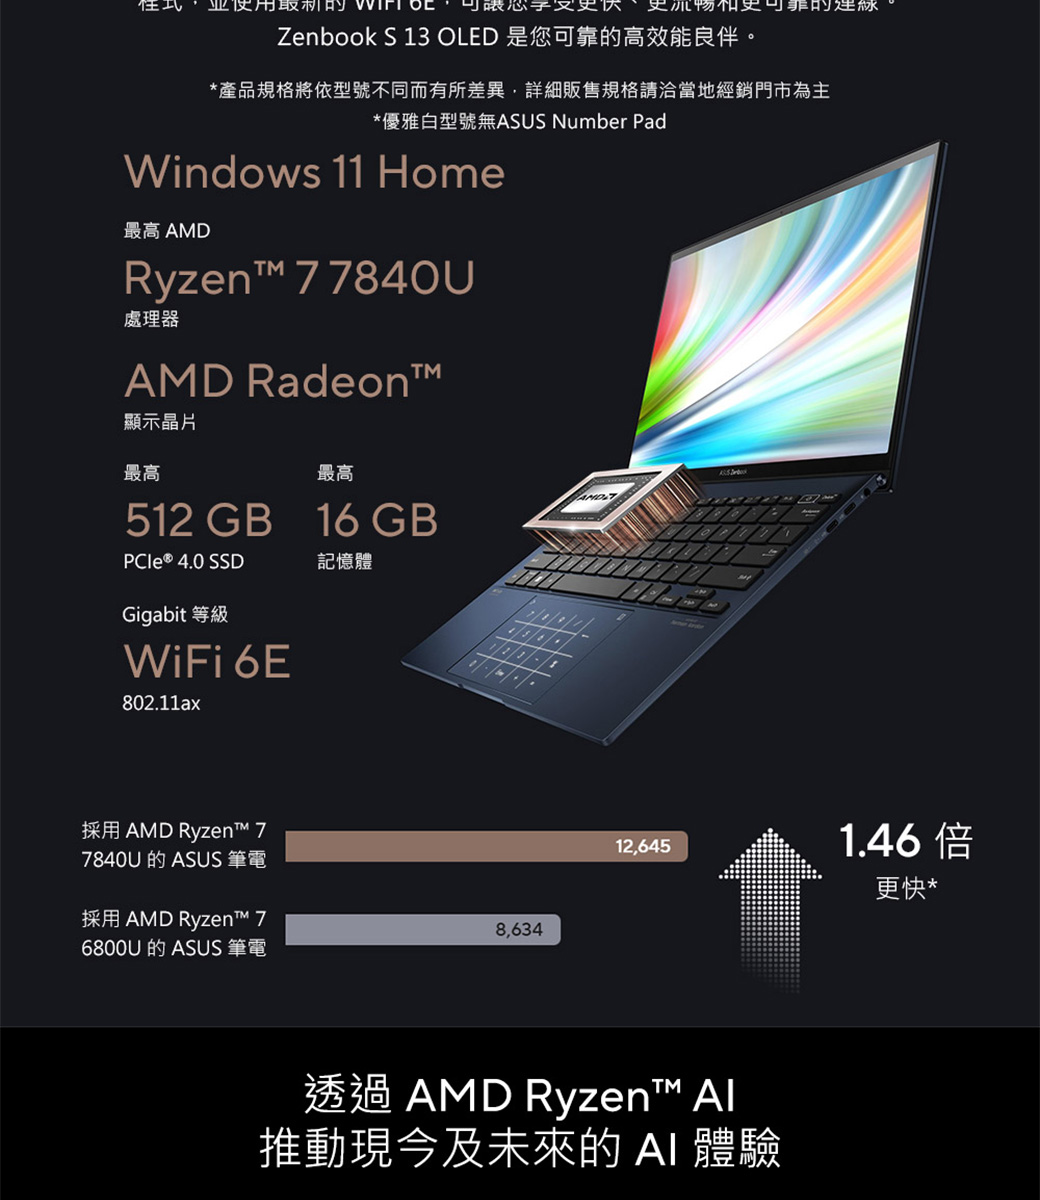 使用更可靠的線Zenbook S 13 OLED 是您可靠的高效能良伴。*產品規格將依型號不同而有所差異詳細販售規格請洽當地經銷門市為主*優雅白型號無ASUS Number PadWindows 11 Home最高 AMDRyzent 77840U處理器AMD Radeon顯示晶片最高最高512 GB 16 GBPCIe ® 4.0 SSD記憶體Gigabit 等級WiFi 6E802.11ax採用 AMD Ryzen™ 77840U 的 ASUS 筆電採用 AMD Ryzen™ 76800U 的 ASUS 筆電8,63412,6451.46 倍更快*透過AMD Ryzen™ Al推動現今及未來的  體驗